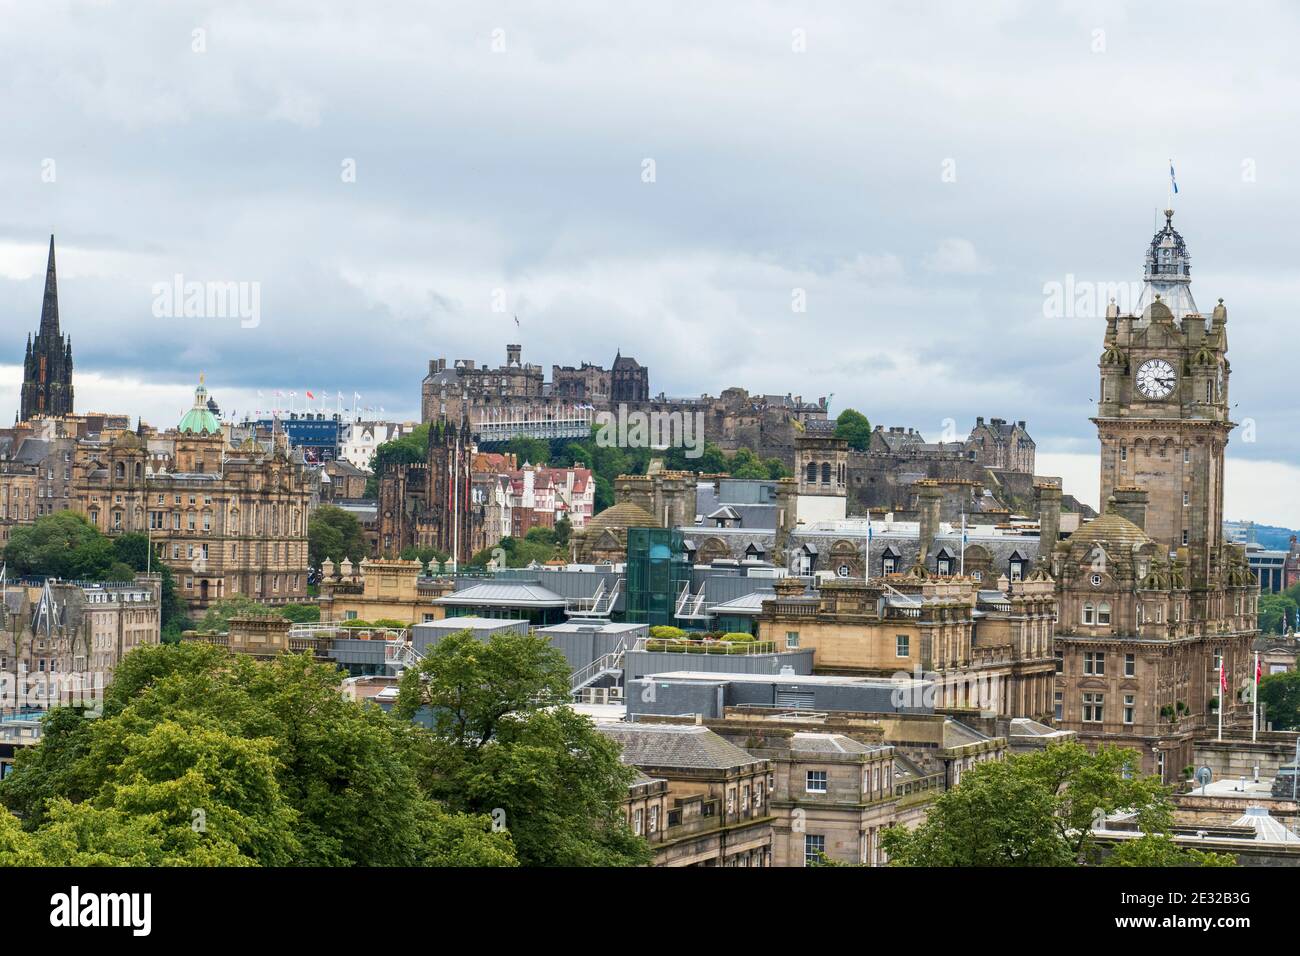 Blick über die Altstadt von Edinburgh mit Schloß, historiischem Balmoral Hotel und Tollbooth Kirche Foto Stock